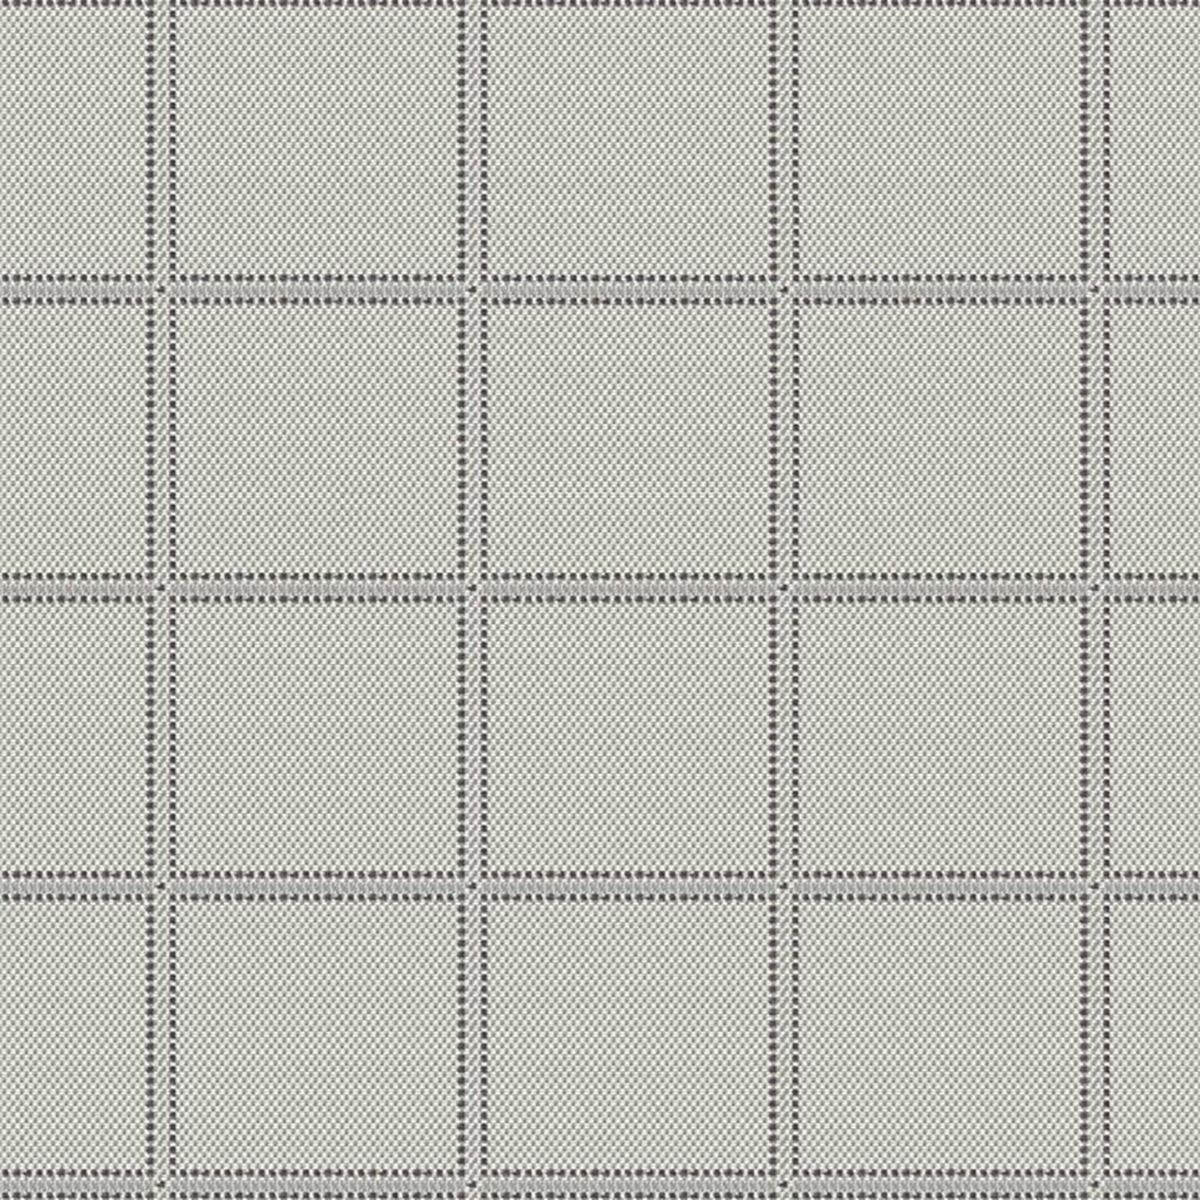 stitched grid chambray cushion for avondale aluminum sofa thumbnail image